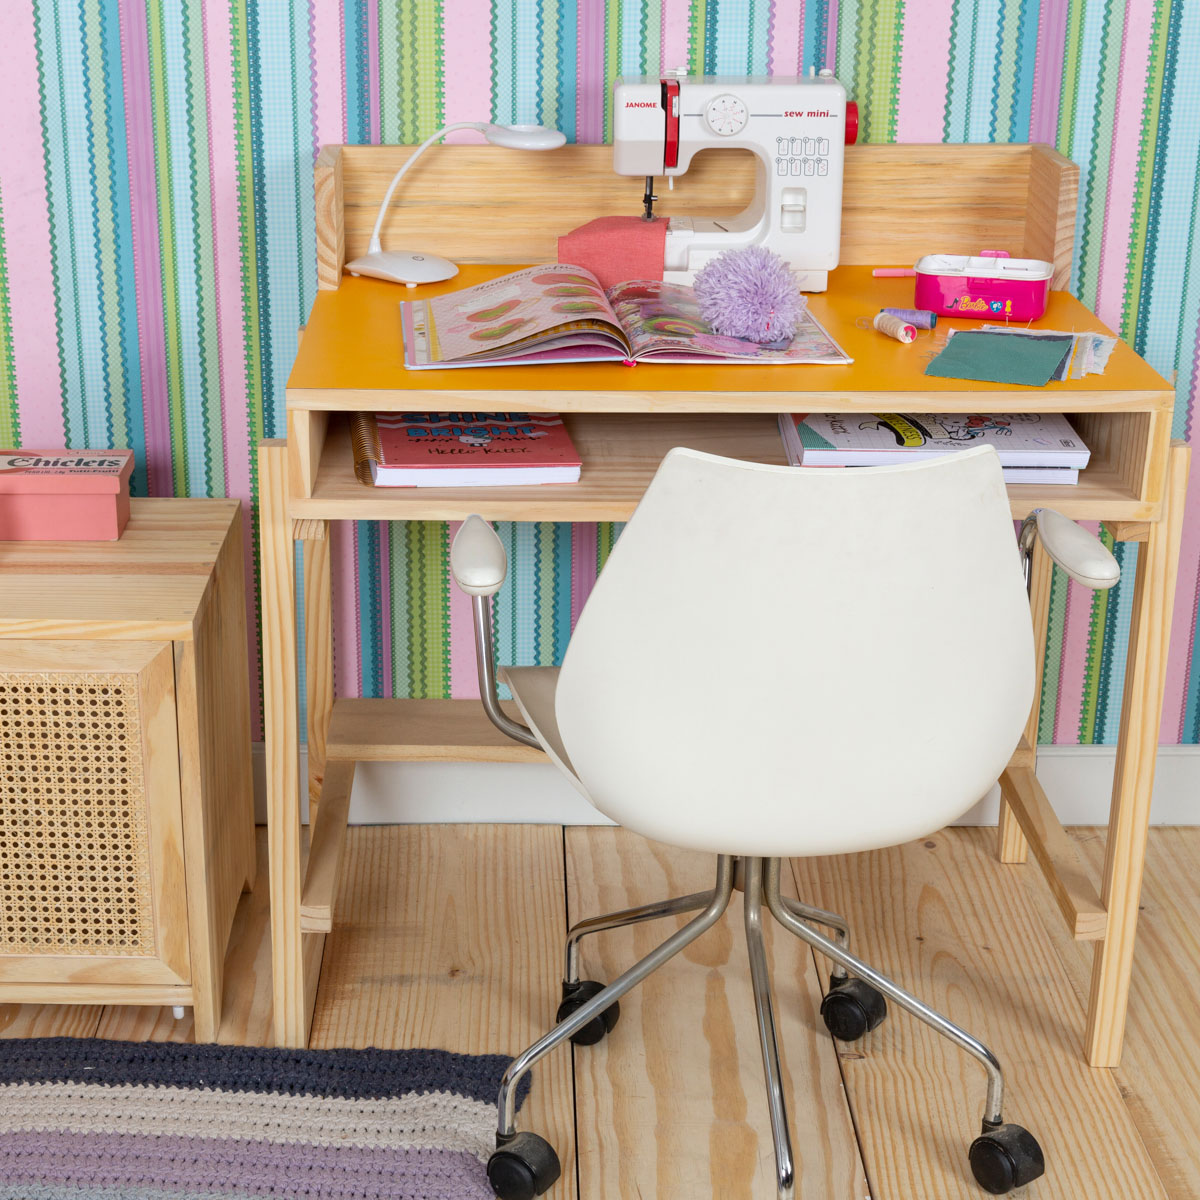 Escrivaninha Tudi de chão. Uma escrivaninha com design moderno e diferente, tampo colorido. Perfeito para qualquer quarto. Aqui com tampo amarelo.